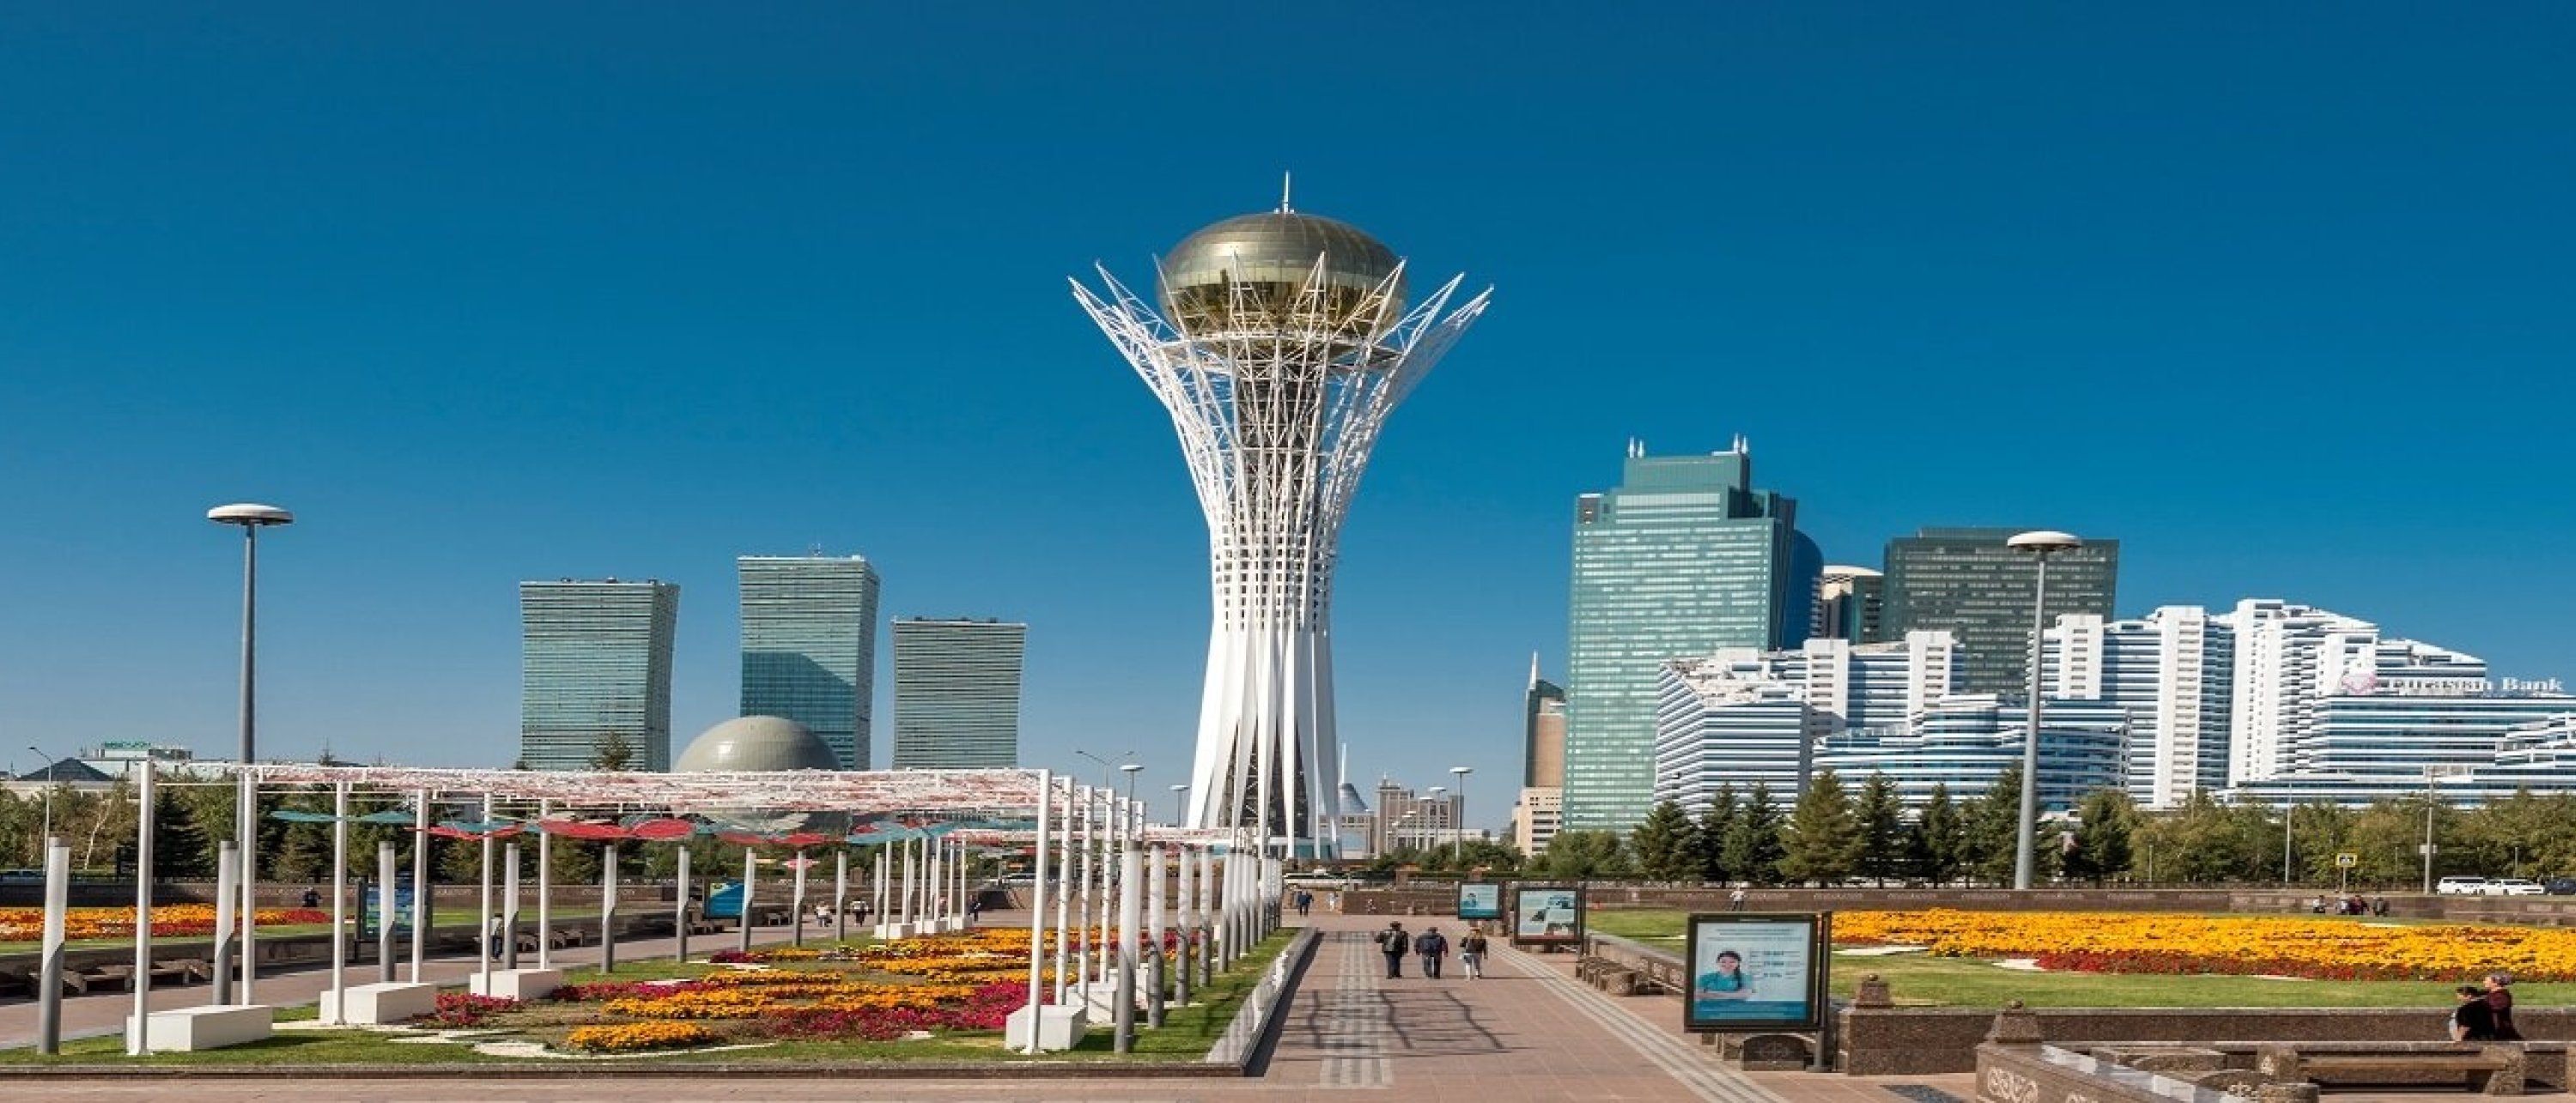 KIOGE Kazakhstan